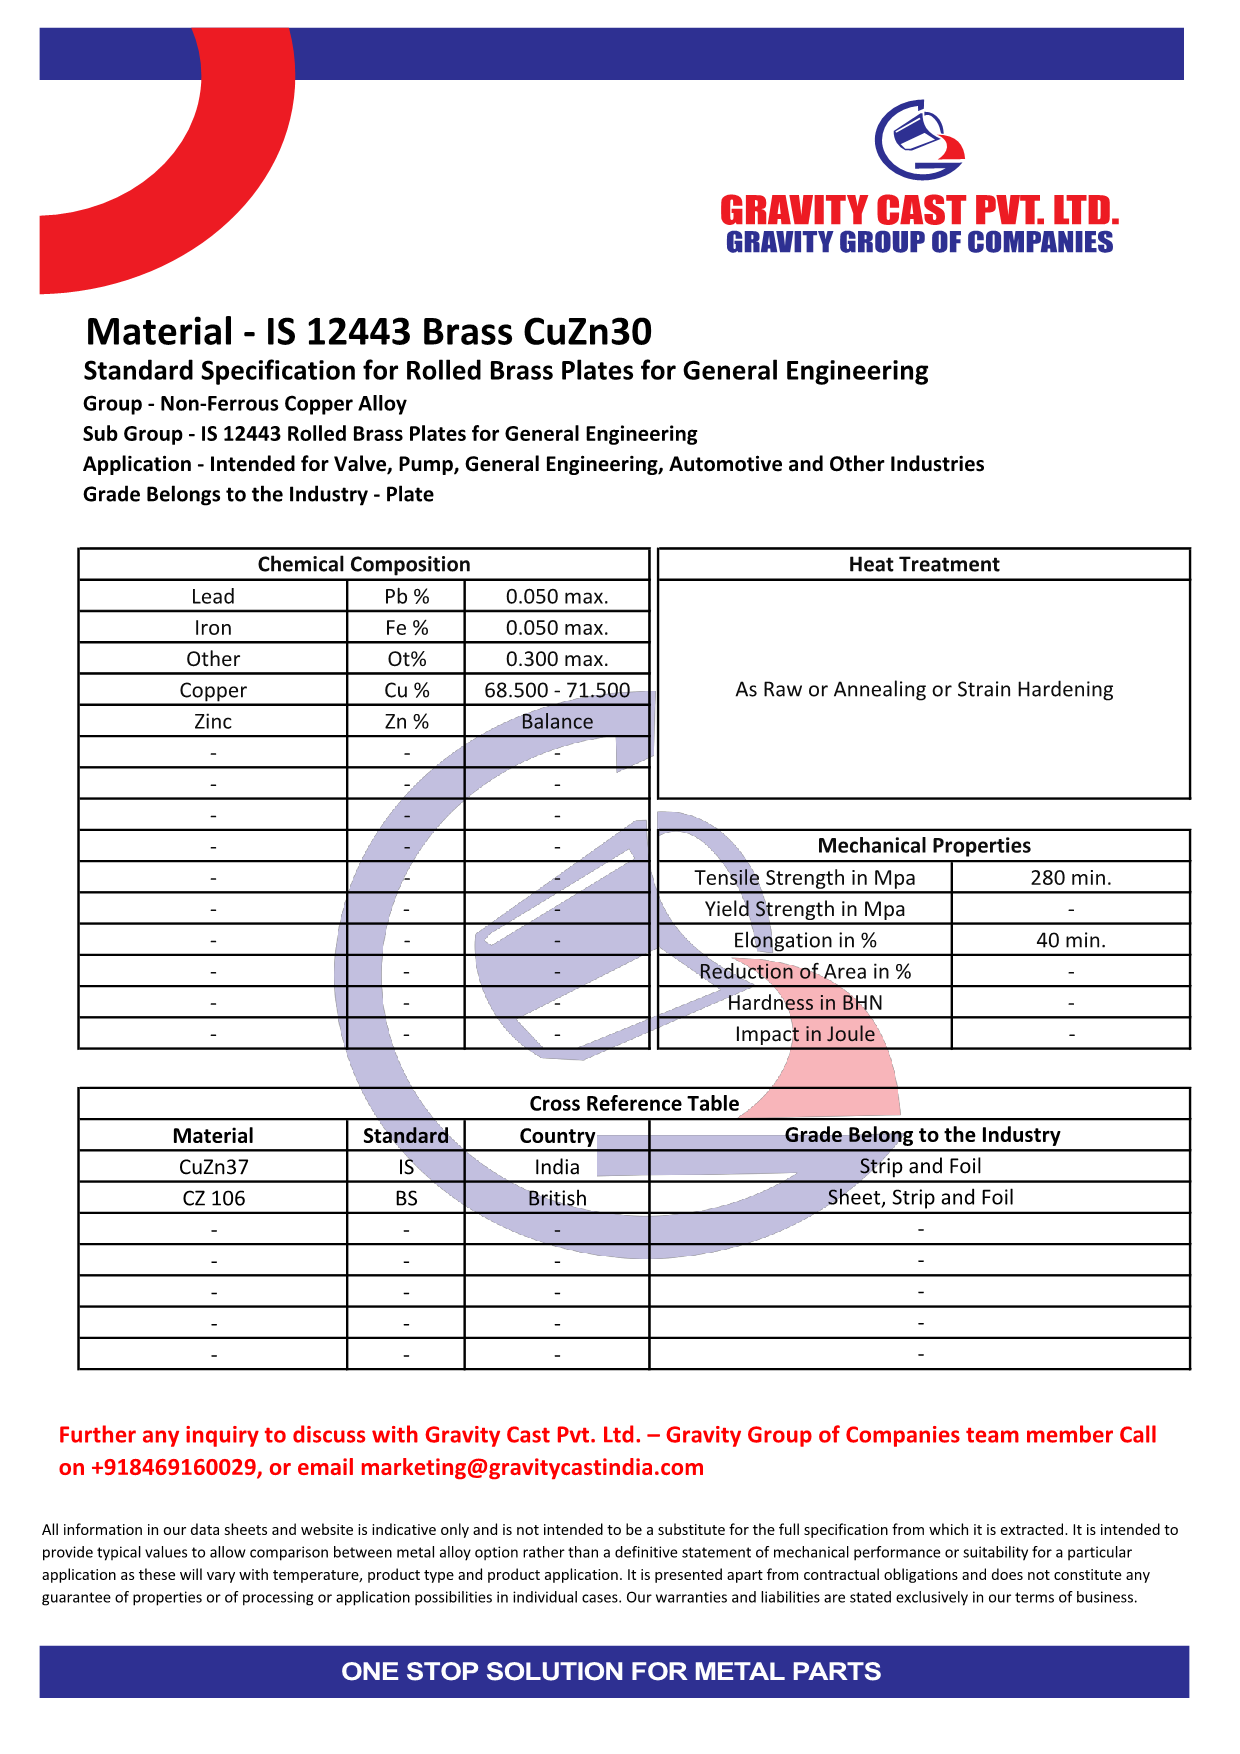 IS 12443 Brass CuZn30.pdf